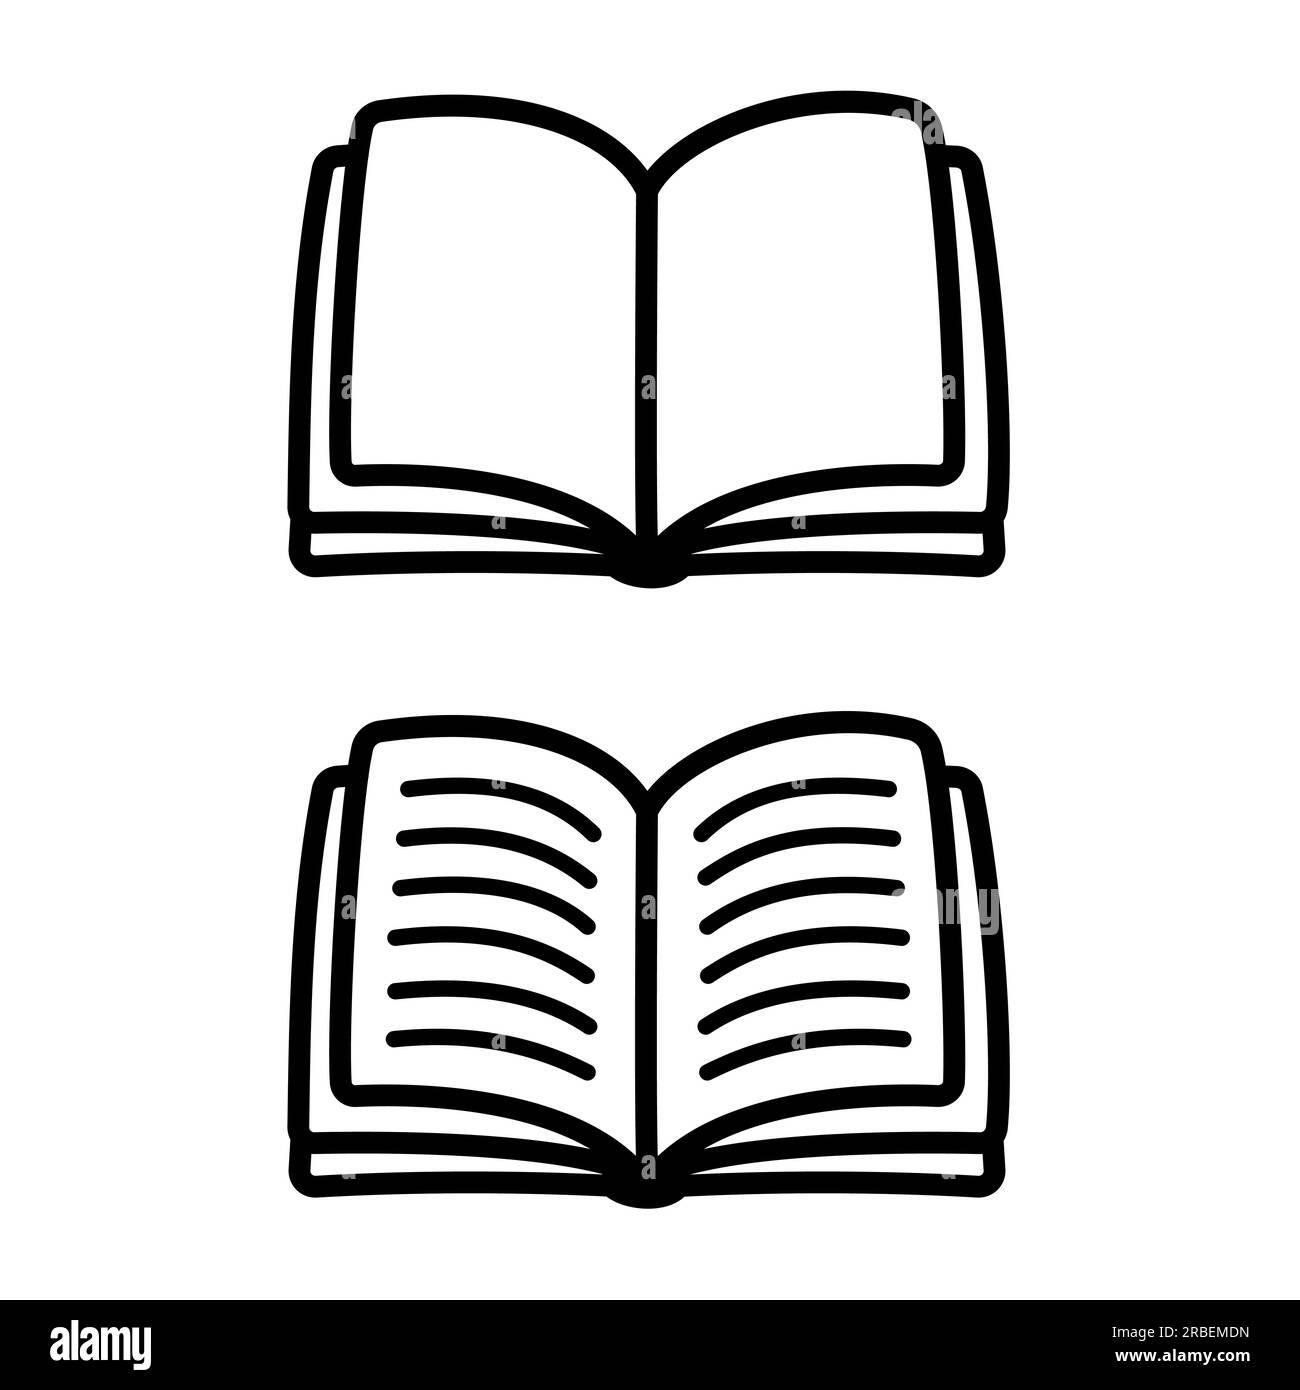 Apri l'icona del doodle del libro, vuota e con testo. Semplice illustrazione vettoriale disegnata a mano, disegno con disegni a linee. Illustrazione Vettoriale